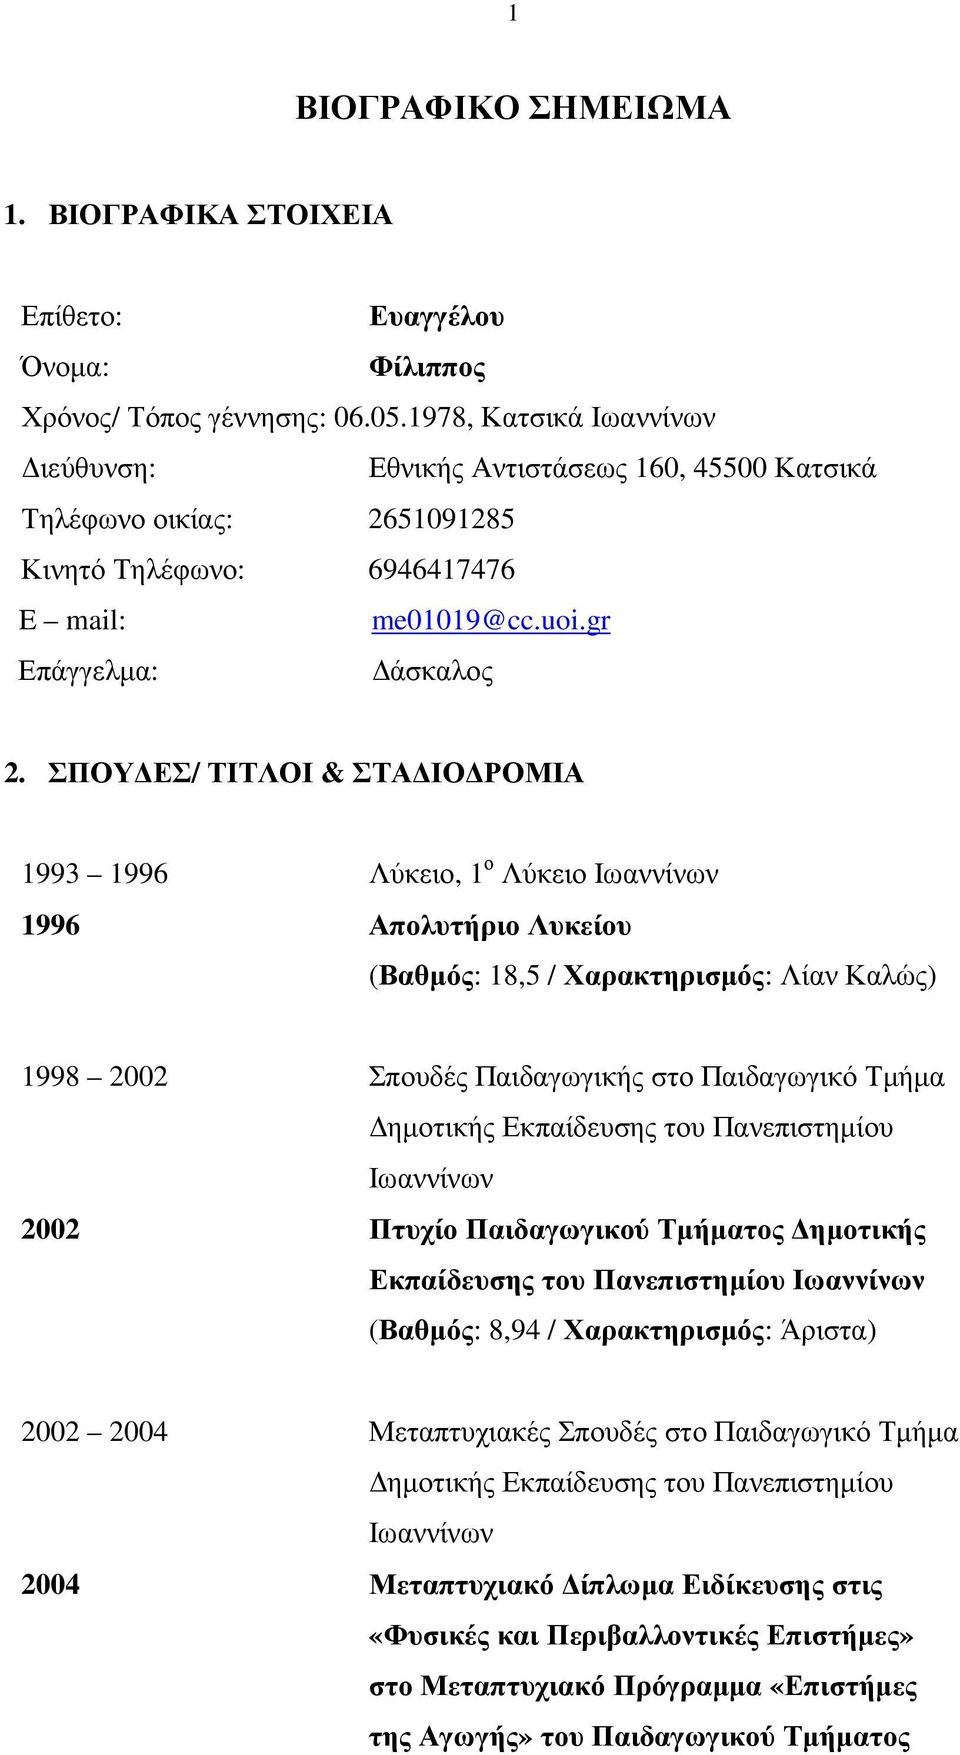 ΣΠΟΥ ΕΣ/ ΤΙΤΛΟΙ & ΣΤΑ ΙΟ ΡΟΜΙΑ 1993 1996 Λύκειο, 1 ο Λύκειο Ιωαννίνων 1996 Απολυτήριο Λυκείου (Βαθµός: 18,5 / Χαρακτηρισµός: Λίαν Καλώς) 1998 2002 Σπουδές Παιδαγωγικής στο Παιδαγωγικό Τµήµα ηµοτικής